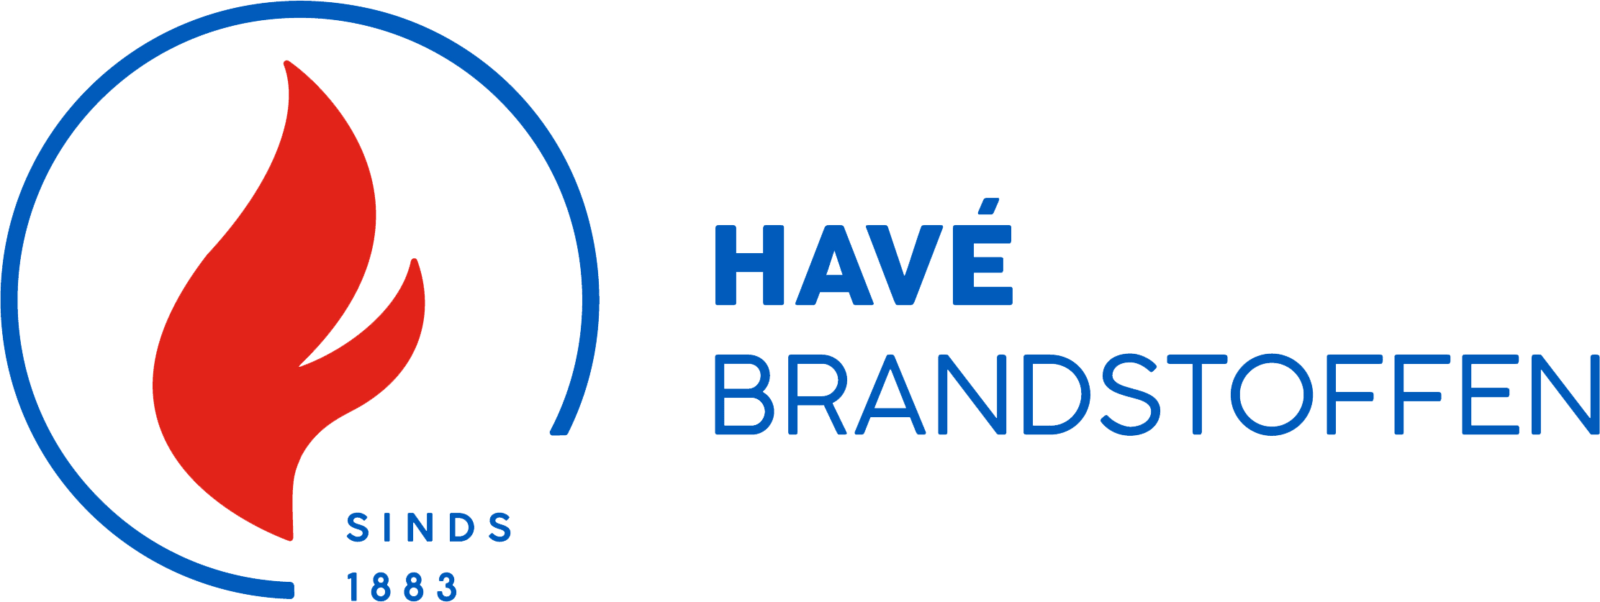 HAVÉ Brandstoffen logo RGB PNG